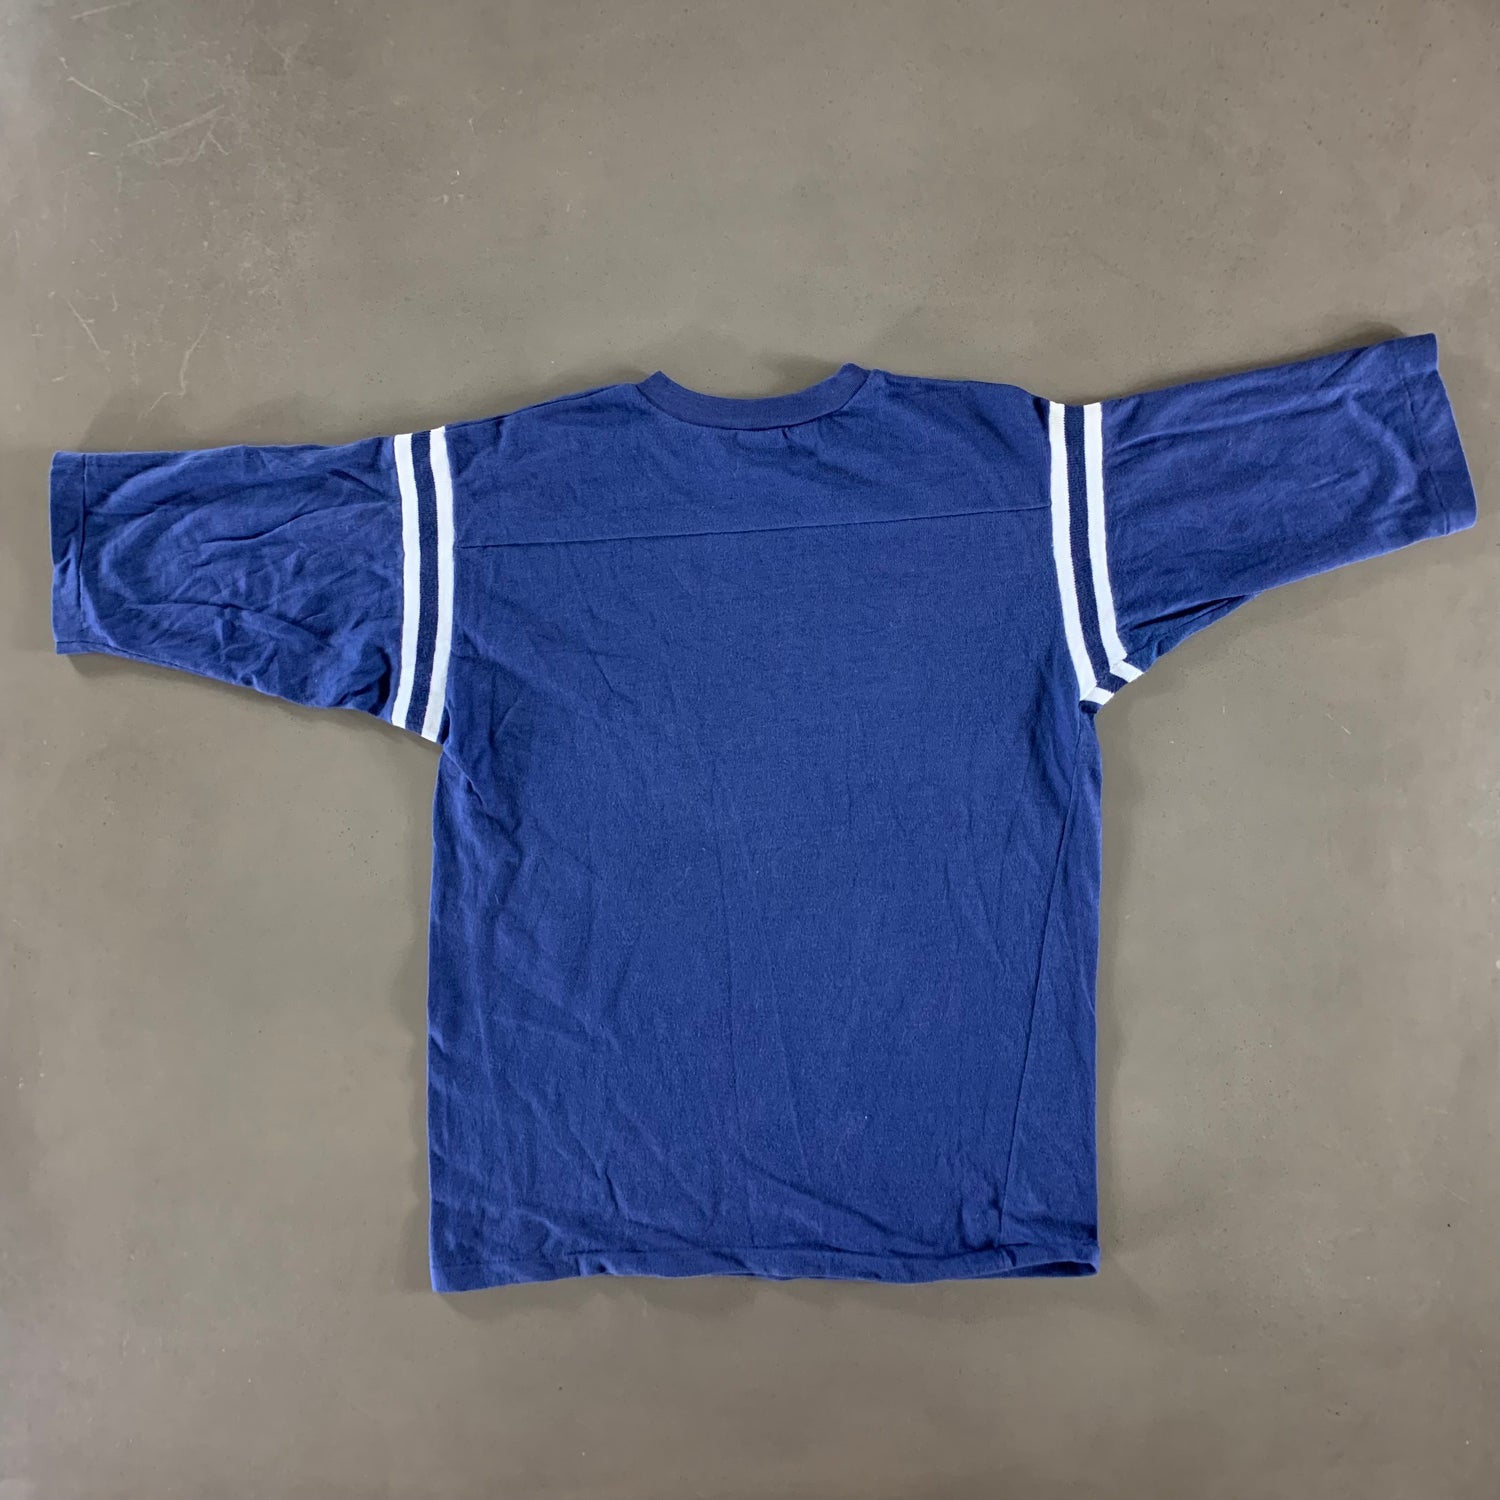 Vintage 1980s Kohawks T-shirt size Large